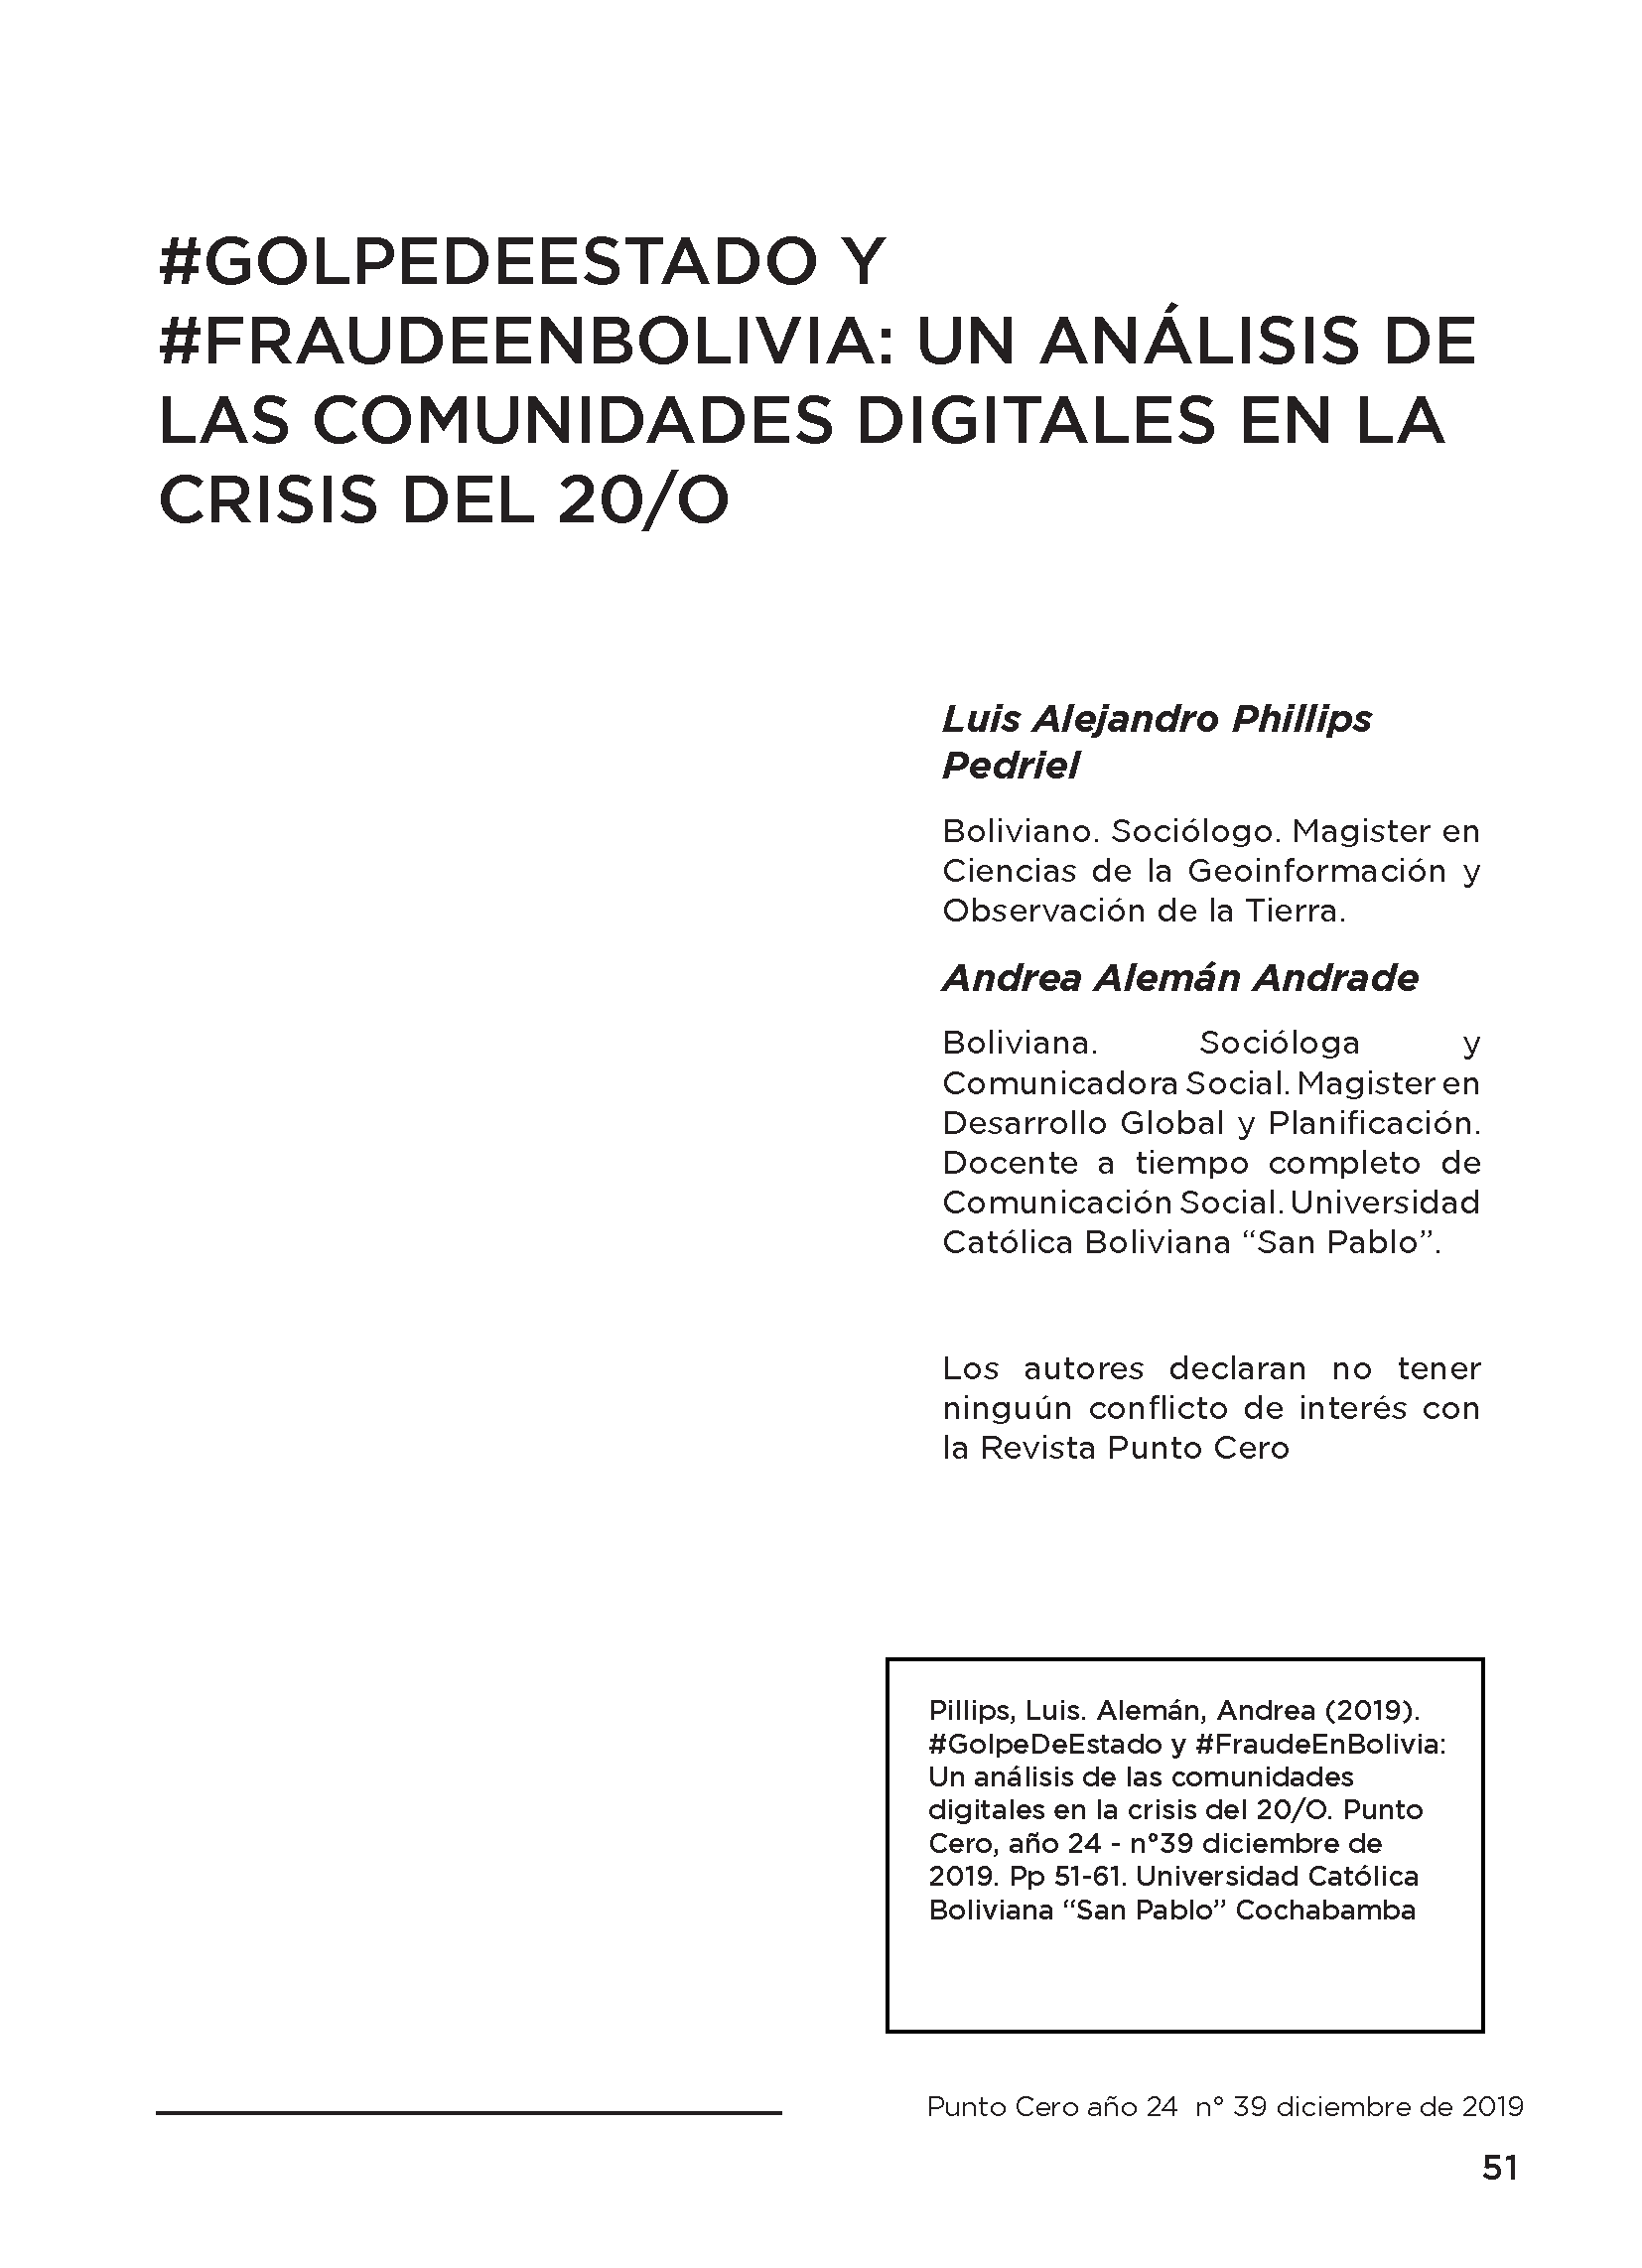 #Golpedeestado y #Fraudeenbolivia: Un análisis de las comunidades digitales en la crisis del 20/O